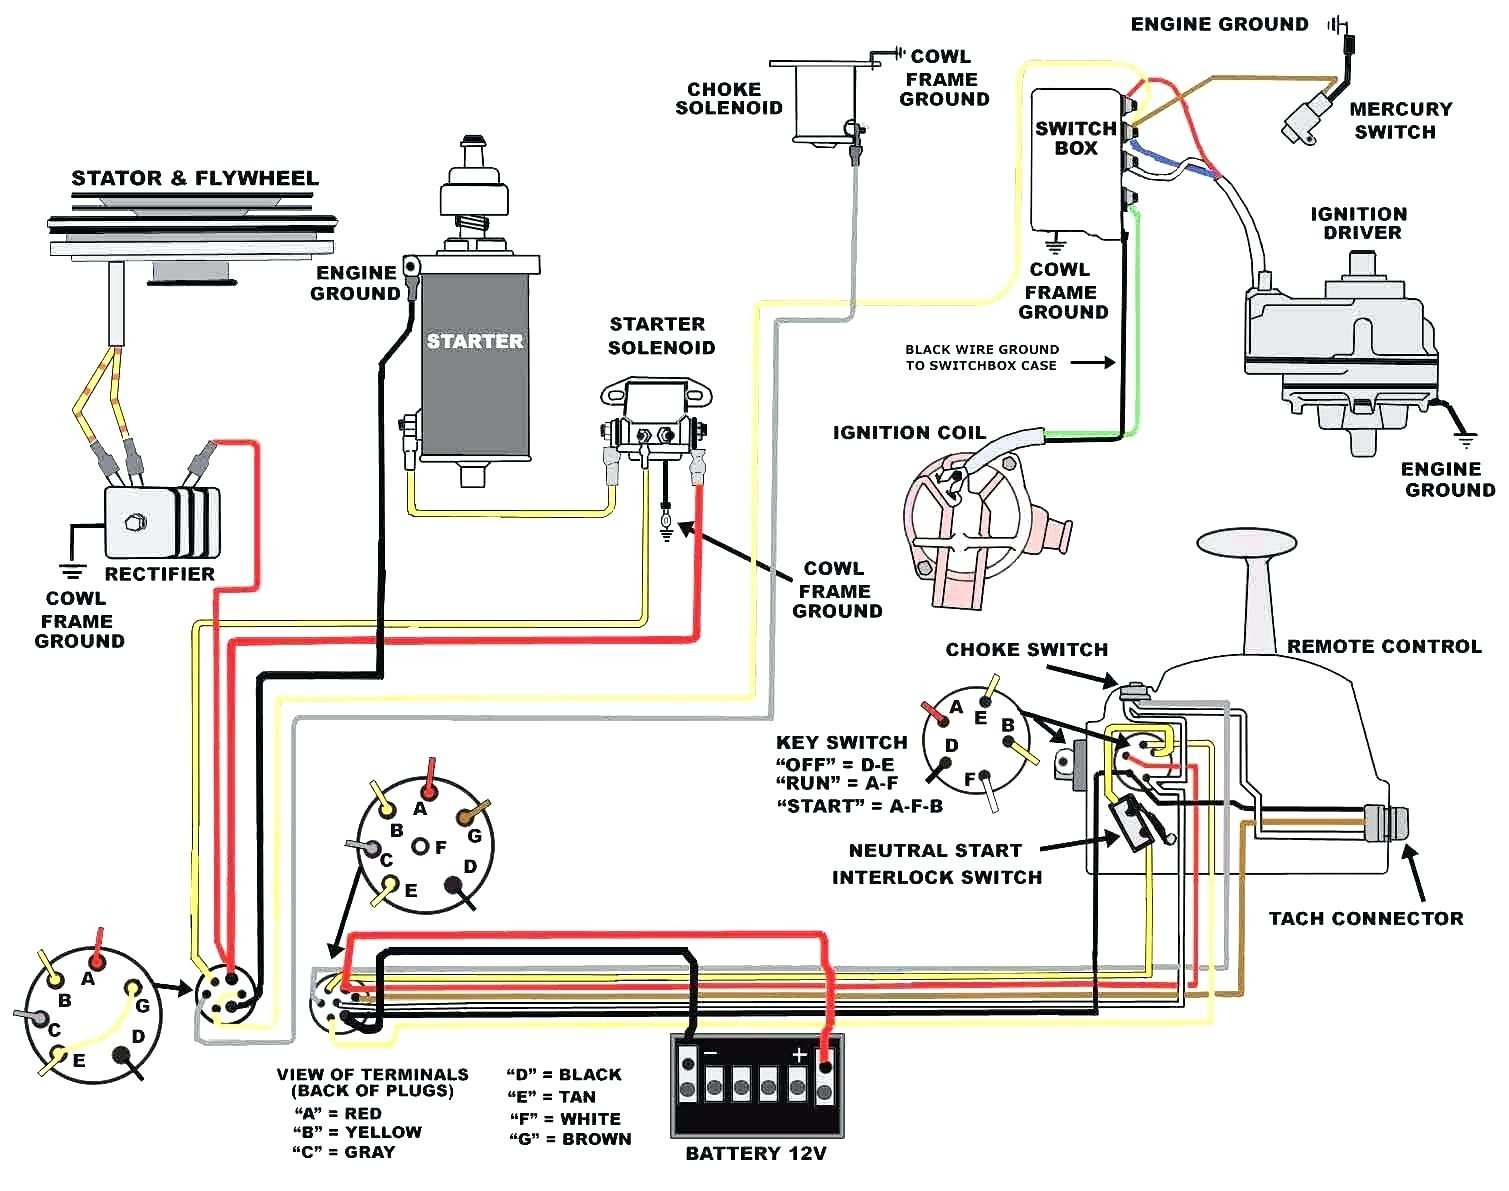 Ignition Circuit Diagram 55